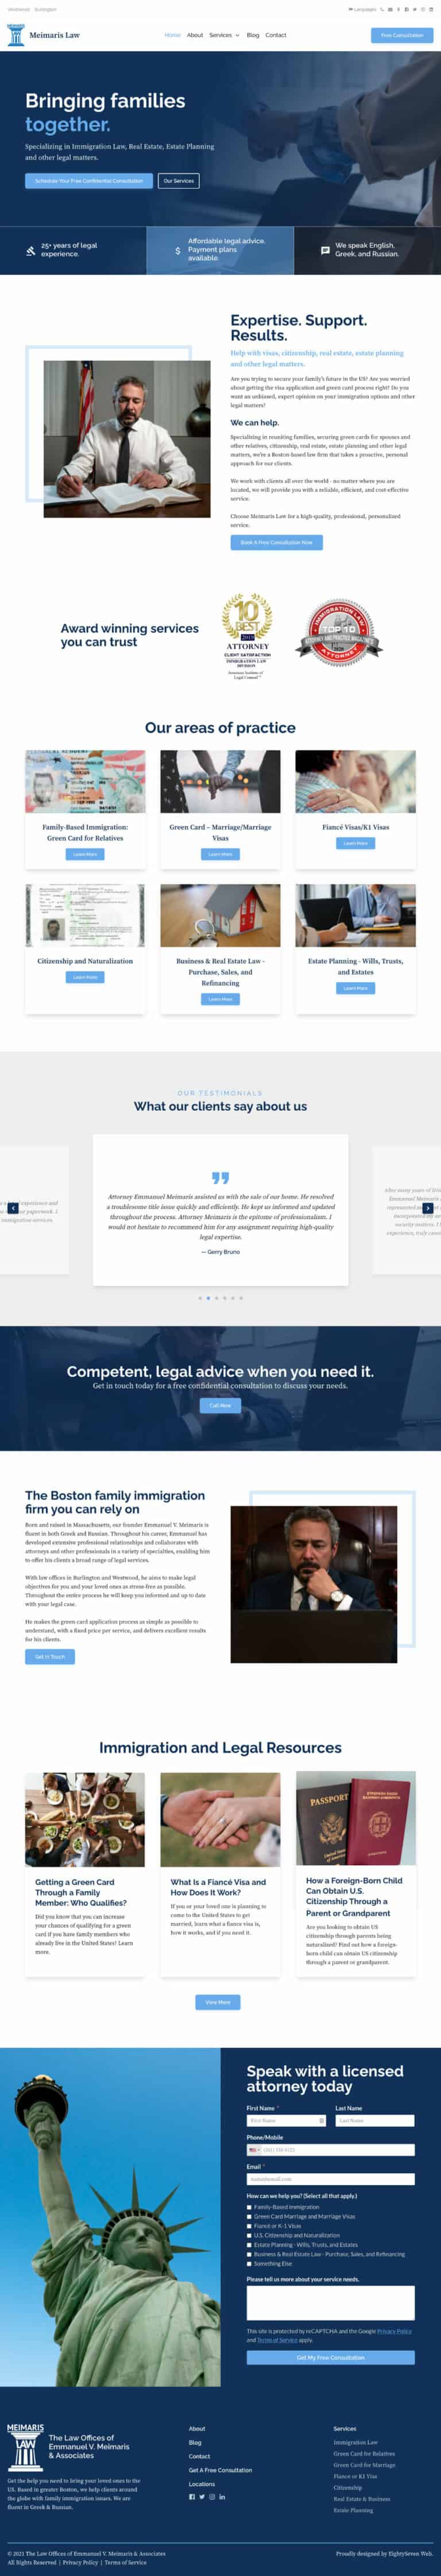 Screenshot of Meimaris Law website.